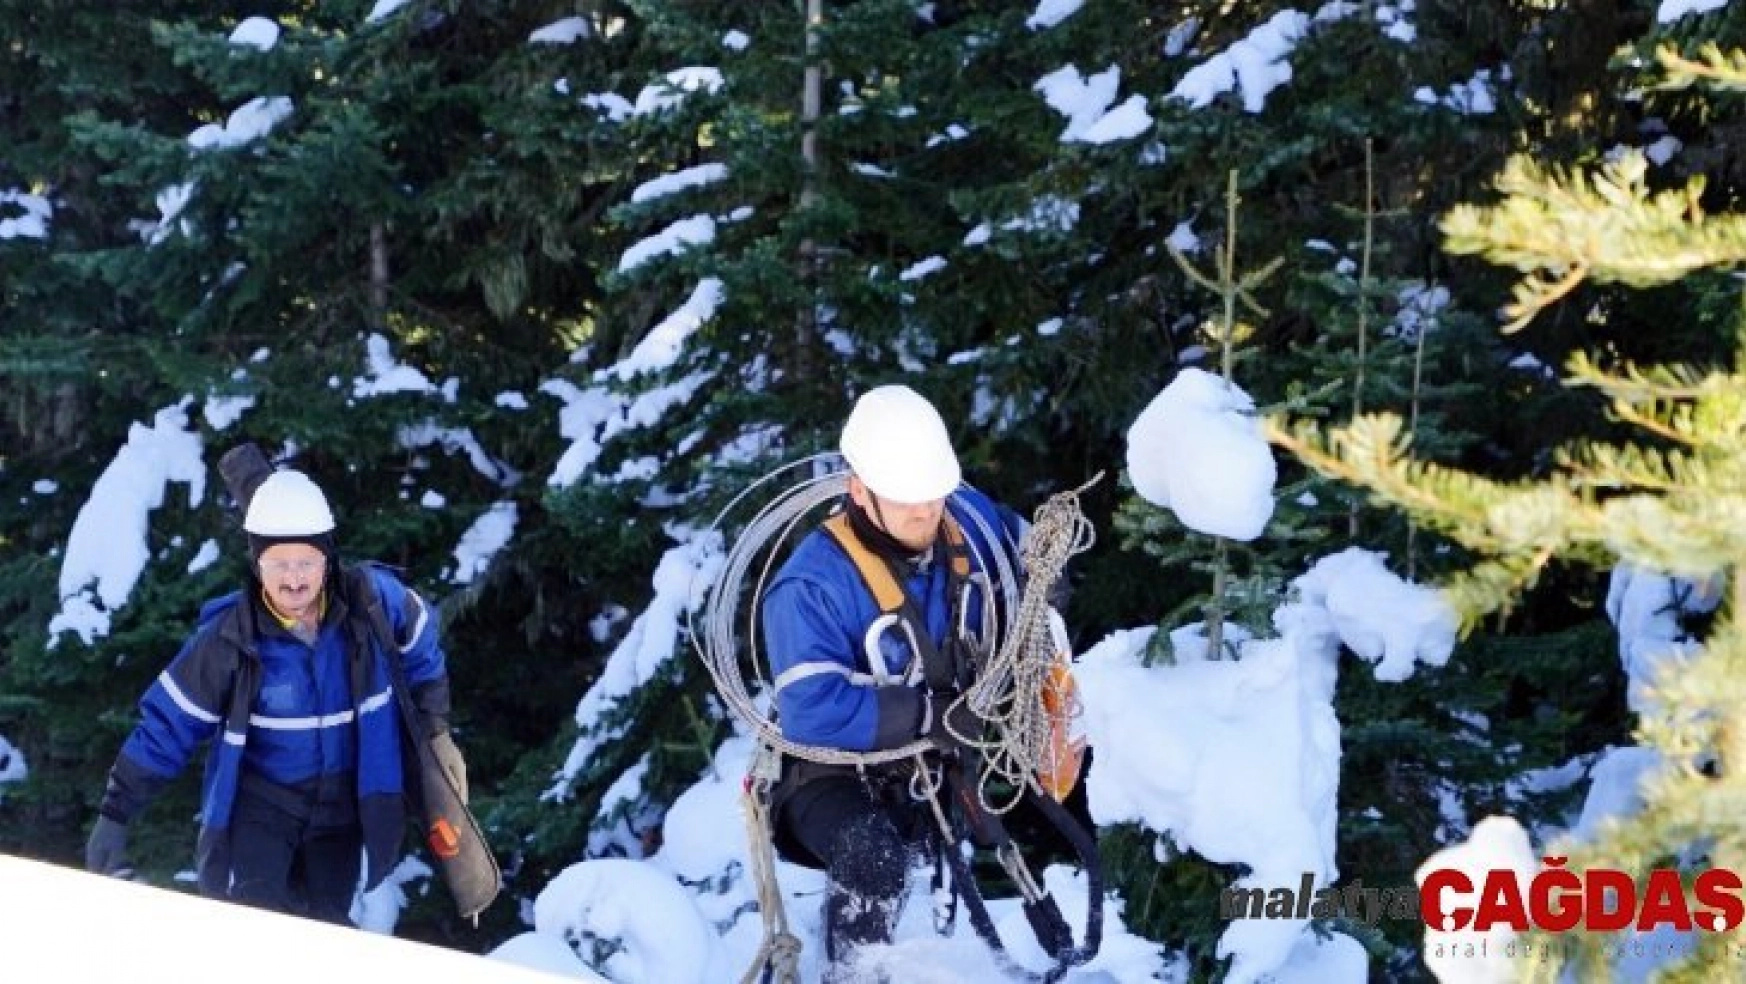 2600 rakımda 1,5 metre karda Başkent EDAŞ ekiplerinin zorlu mücadelesi